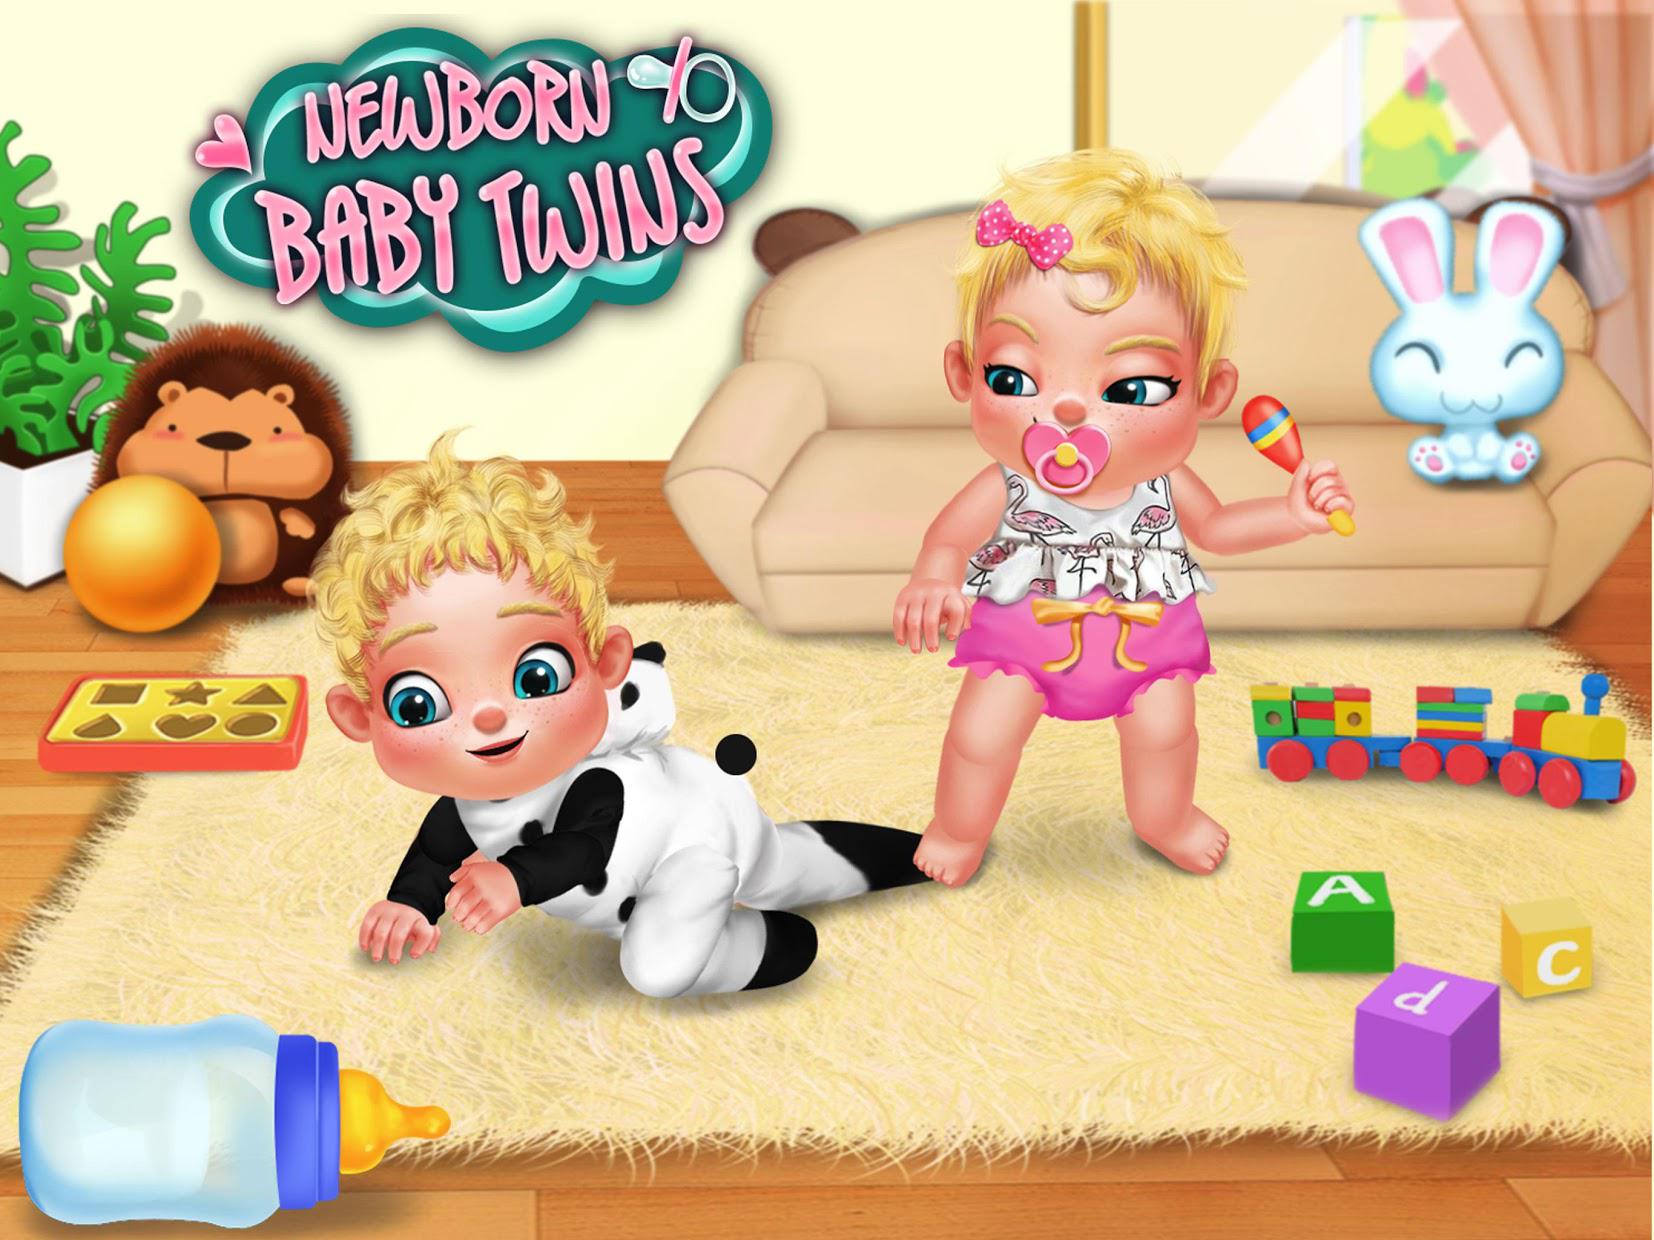 婴儿护理游戏 - 照顾小小双胞胎新生婴儿_截图_2